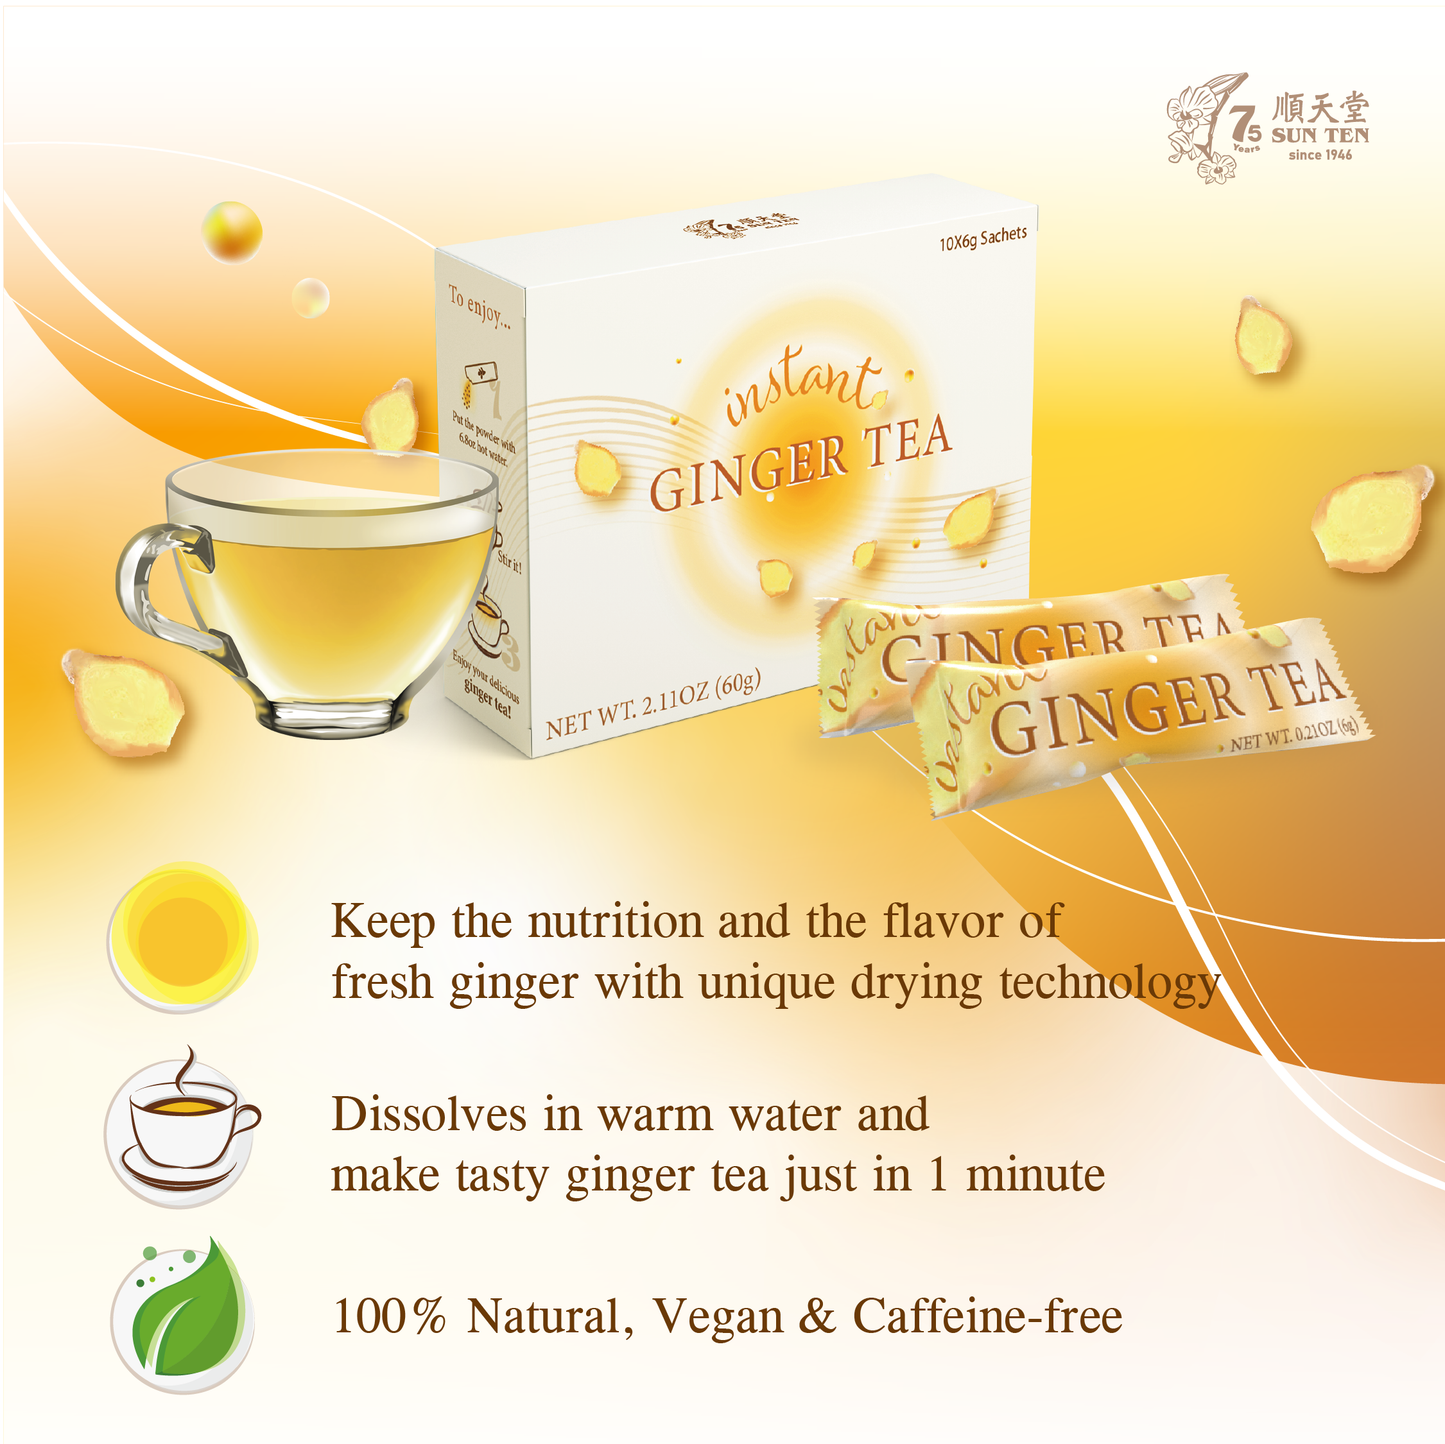 (清冠小套組) 清冠一號 SunTen Glory 10™ x1 + 暖心生薑茶 Instant Ginger Tea x2